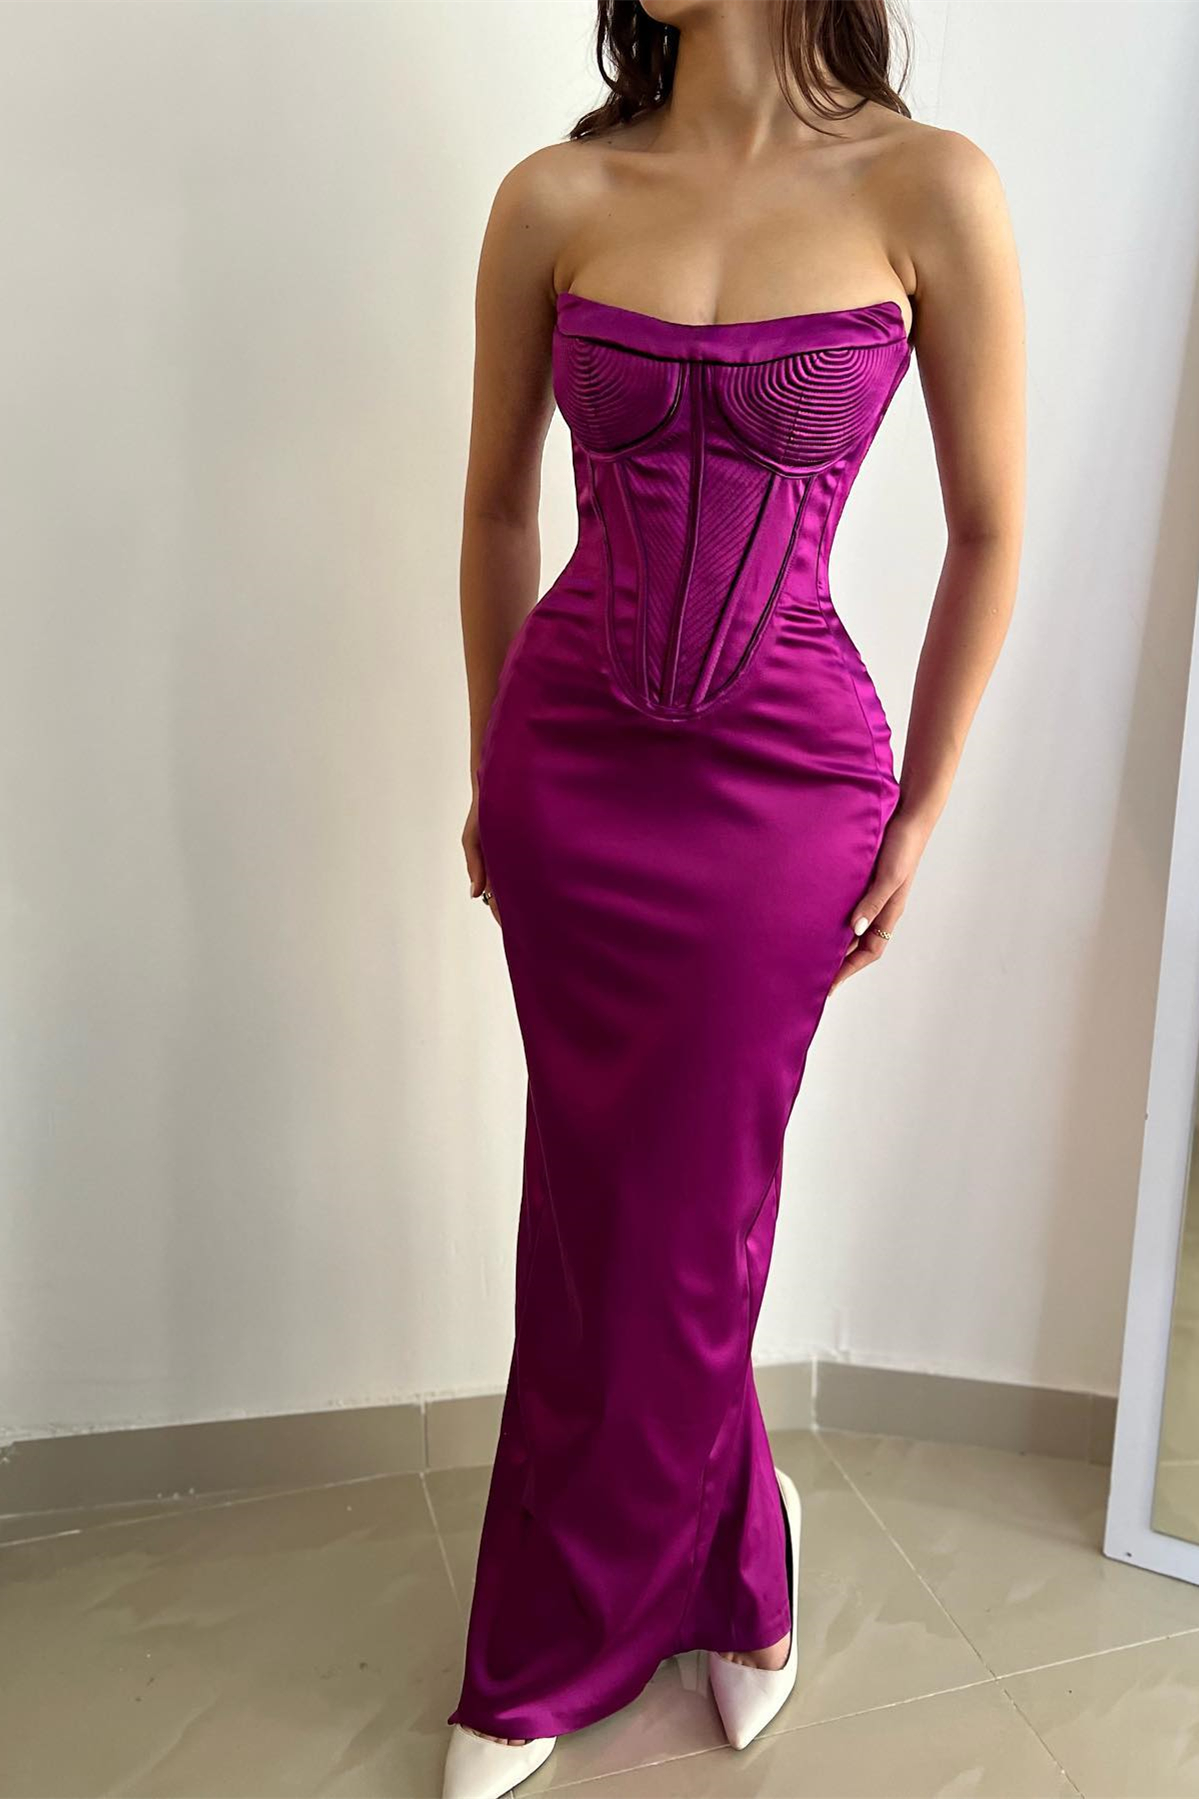 New Arrival Purple Strapless Sleeveless Mermaid Prom Dress On Sale - lulusllly